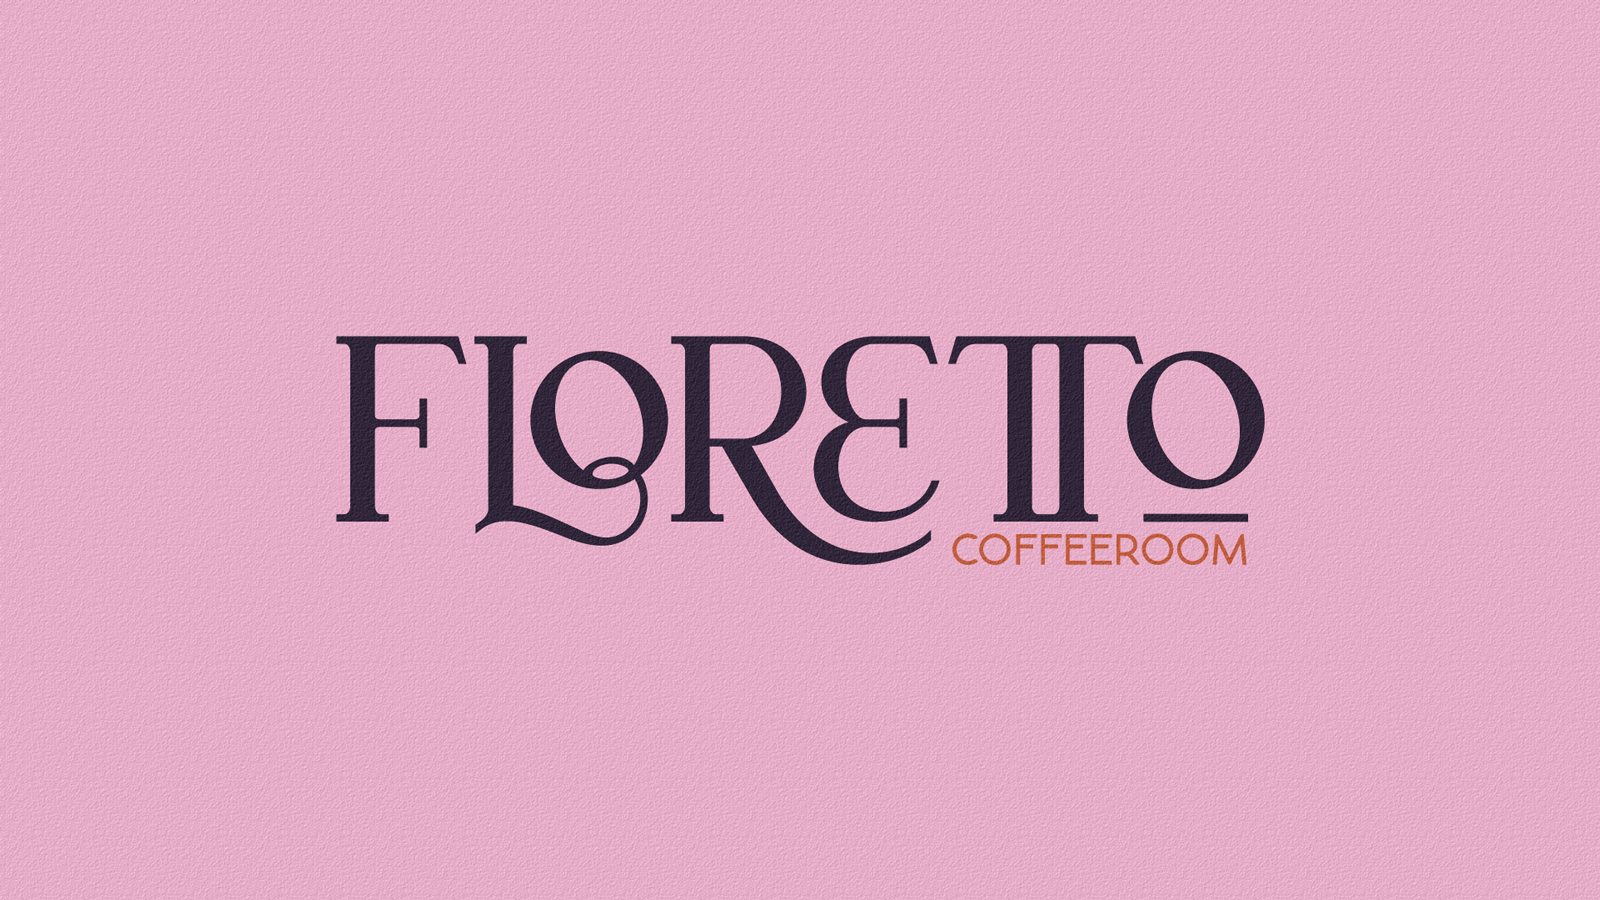 Brand Design for Floretto Coffeeroom